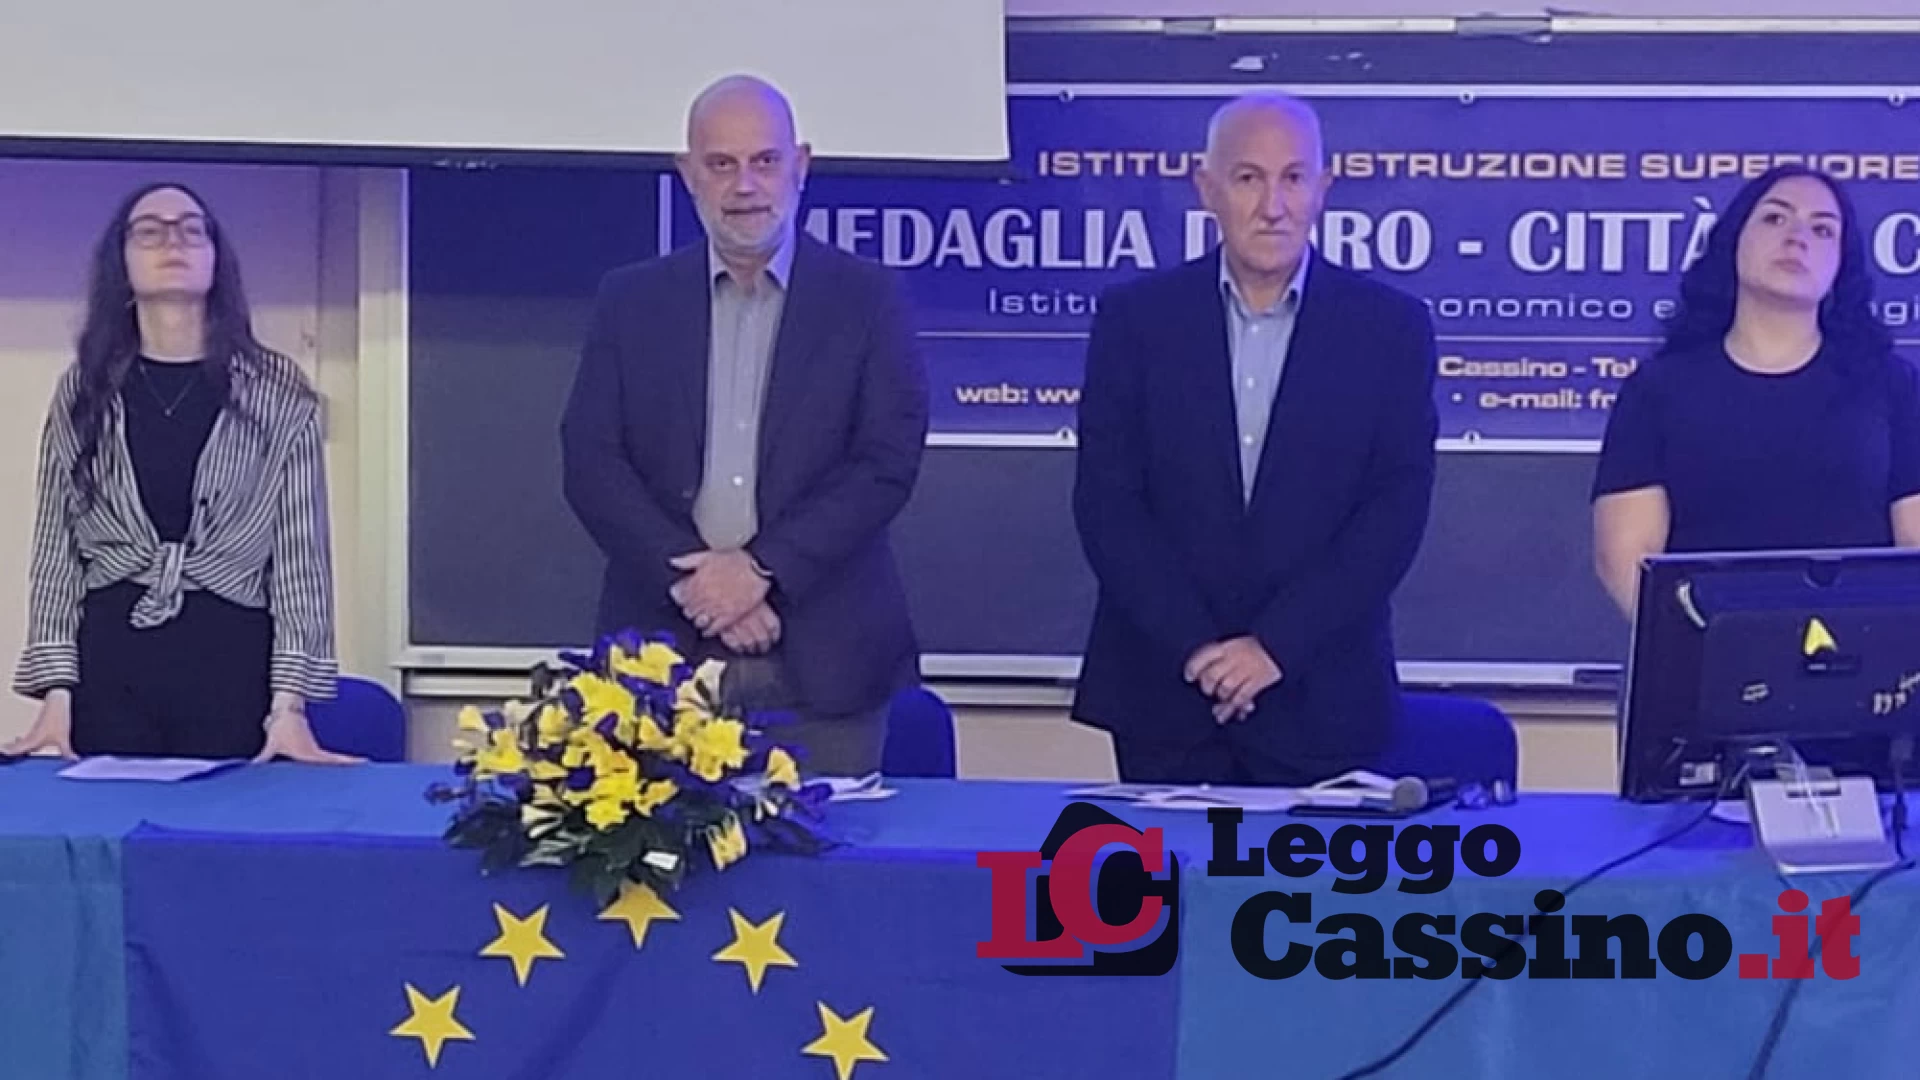 Continua la Festa dell'Europa all'IIS Medaglia d'Oro "Città di Cassino"